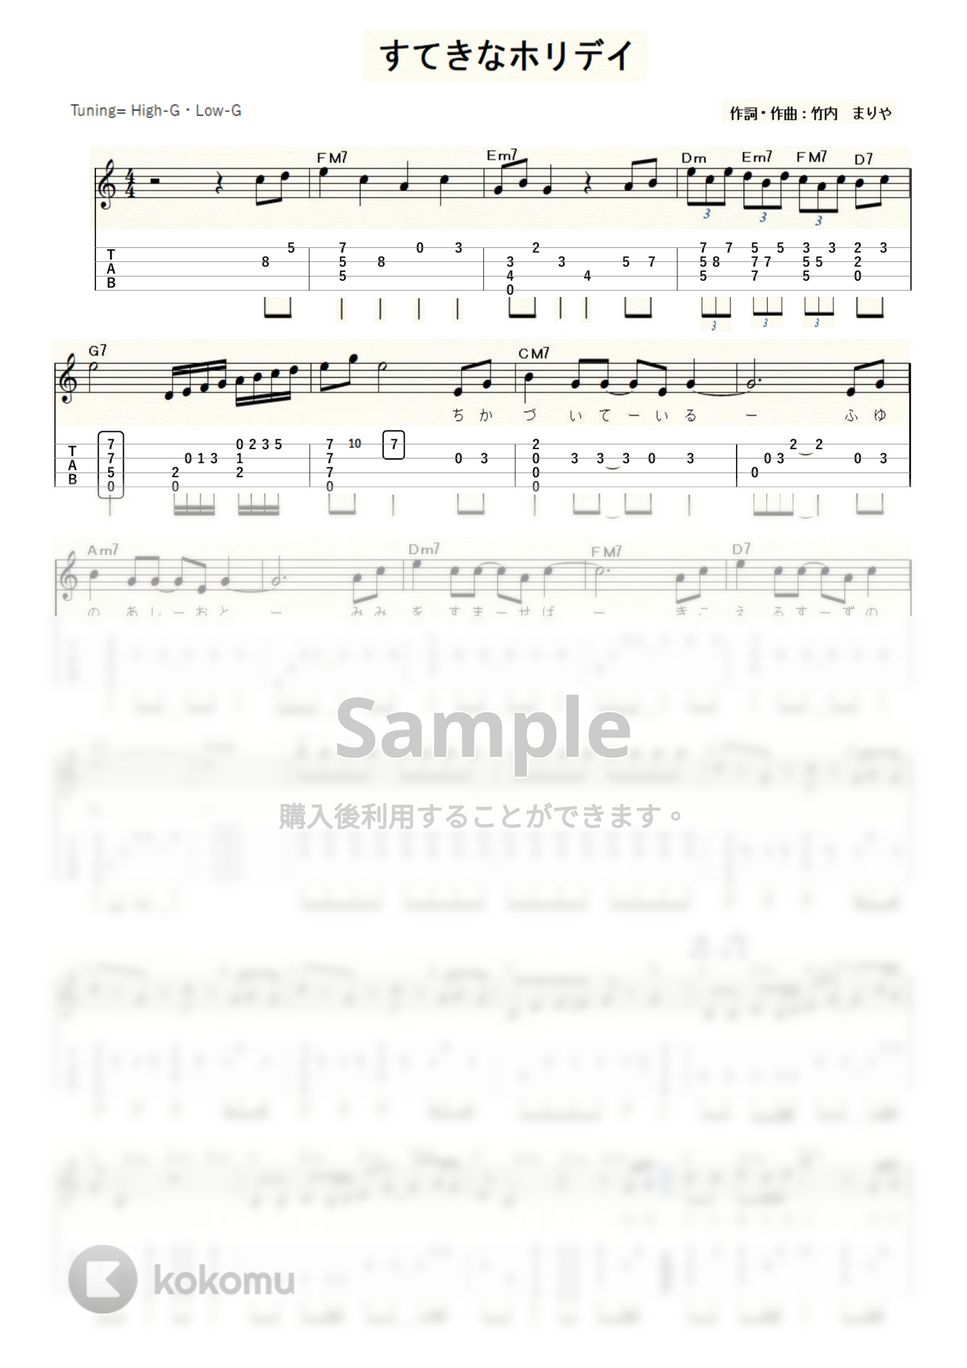 竹内まりや - すてきなホリデイ (ｳｸﾚﾚｿﾛ/High-G・Low-G/中級) by ukulelepapa